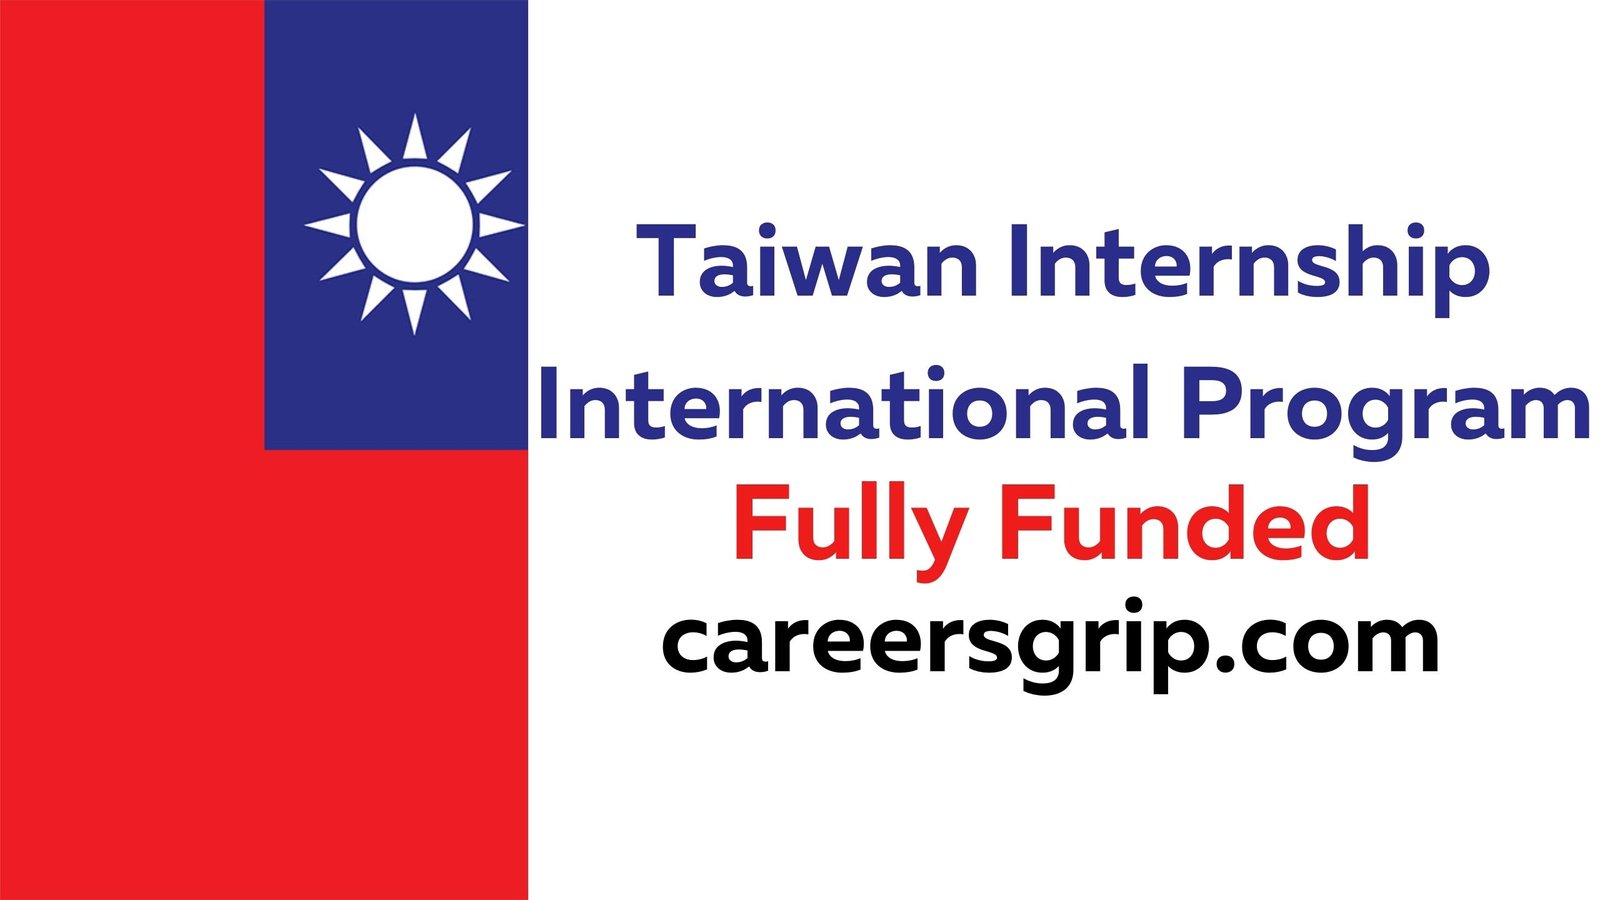 Taiwan Internship